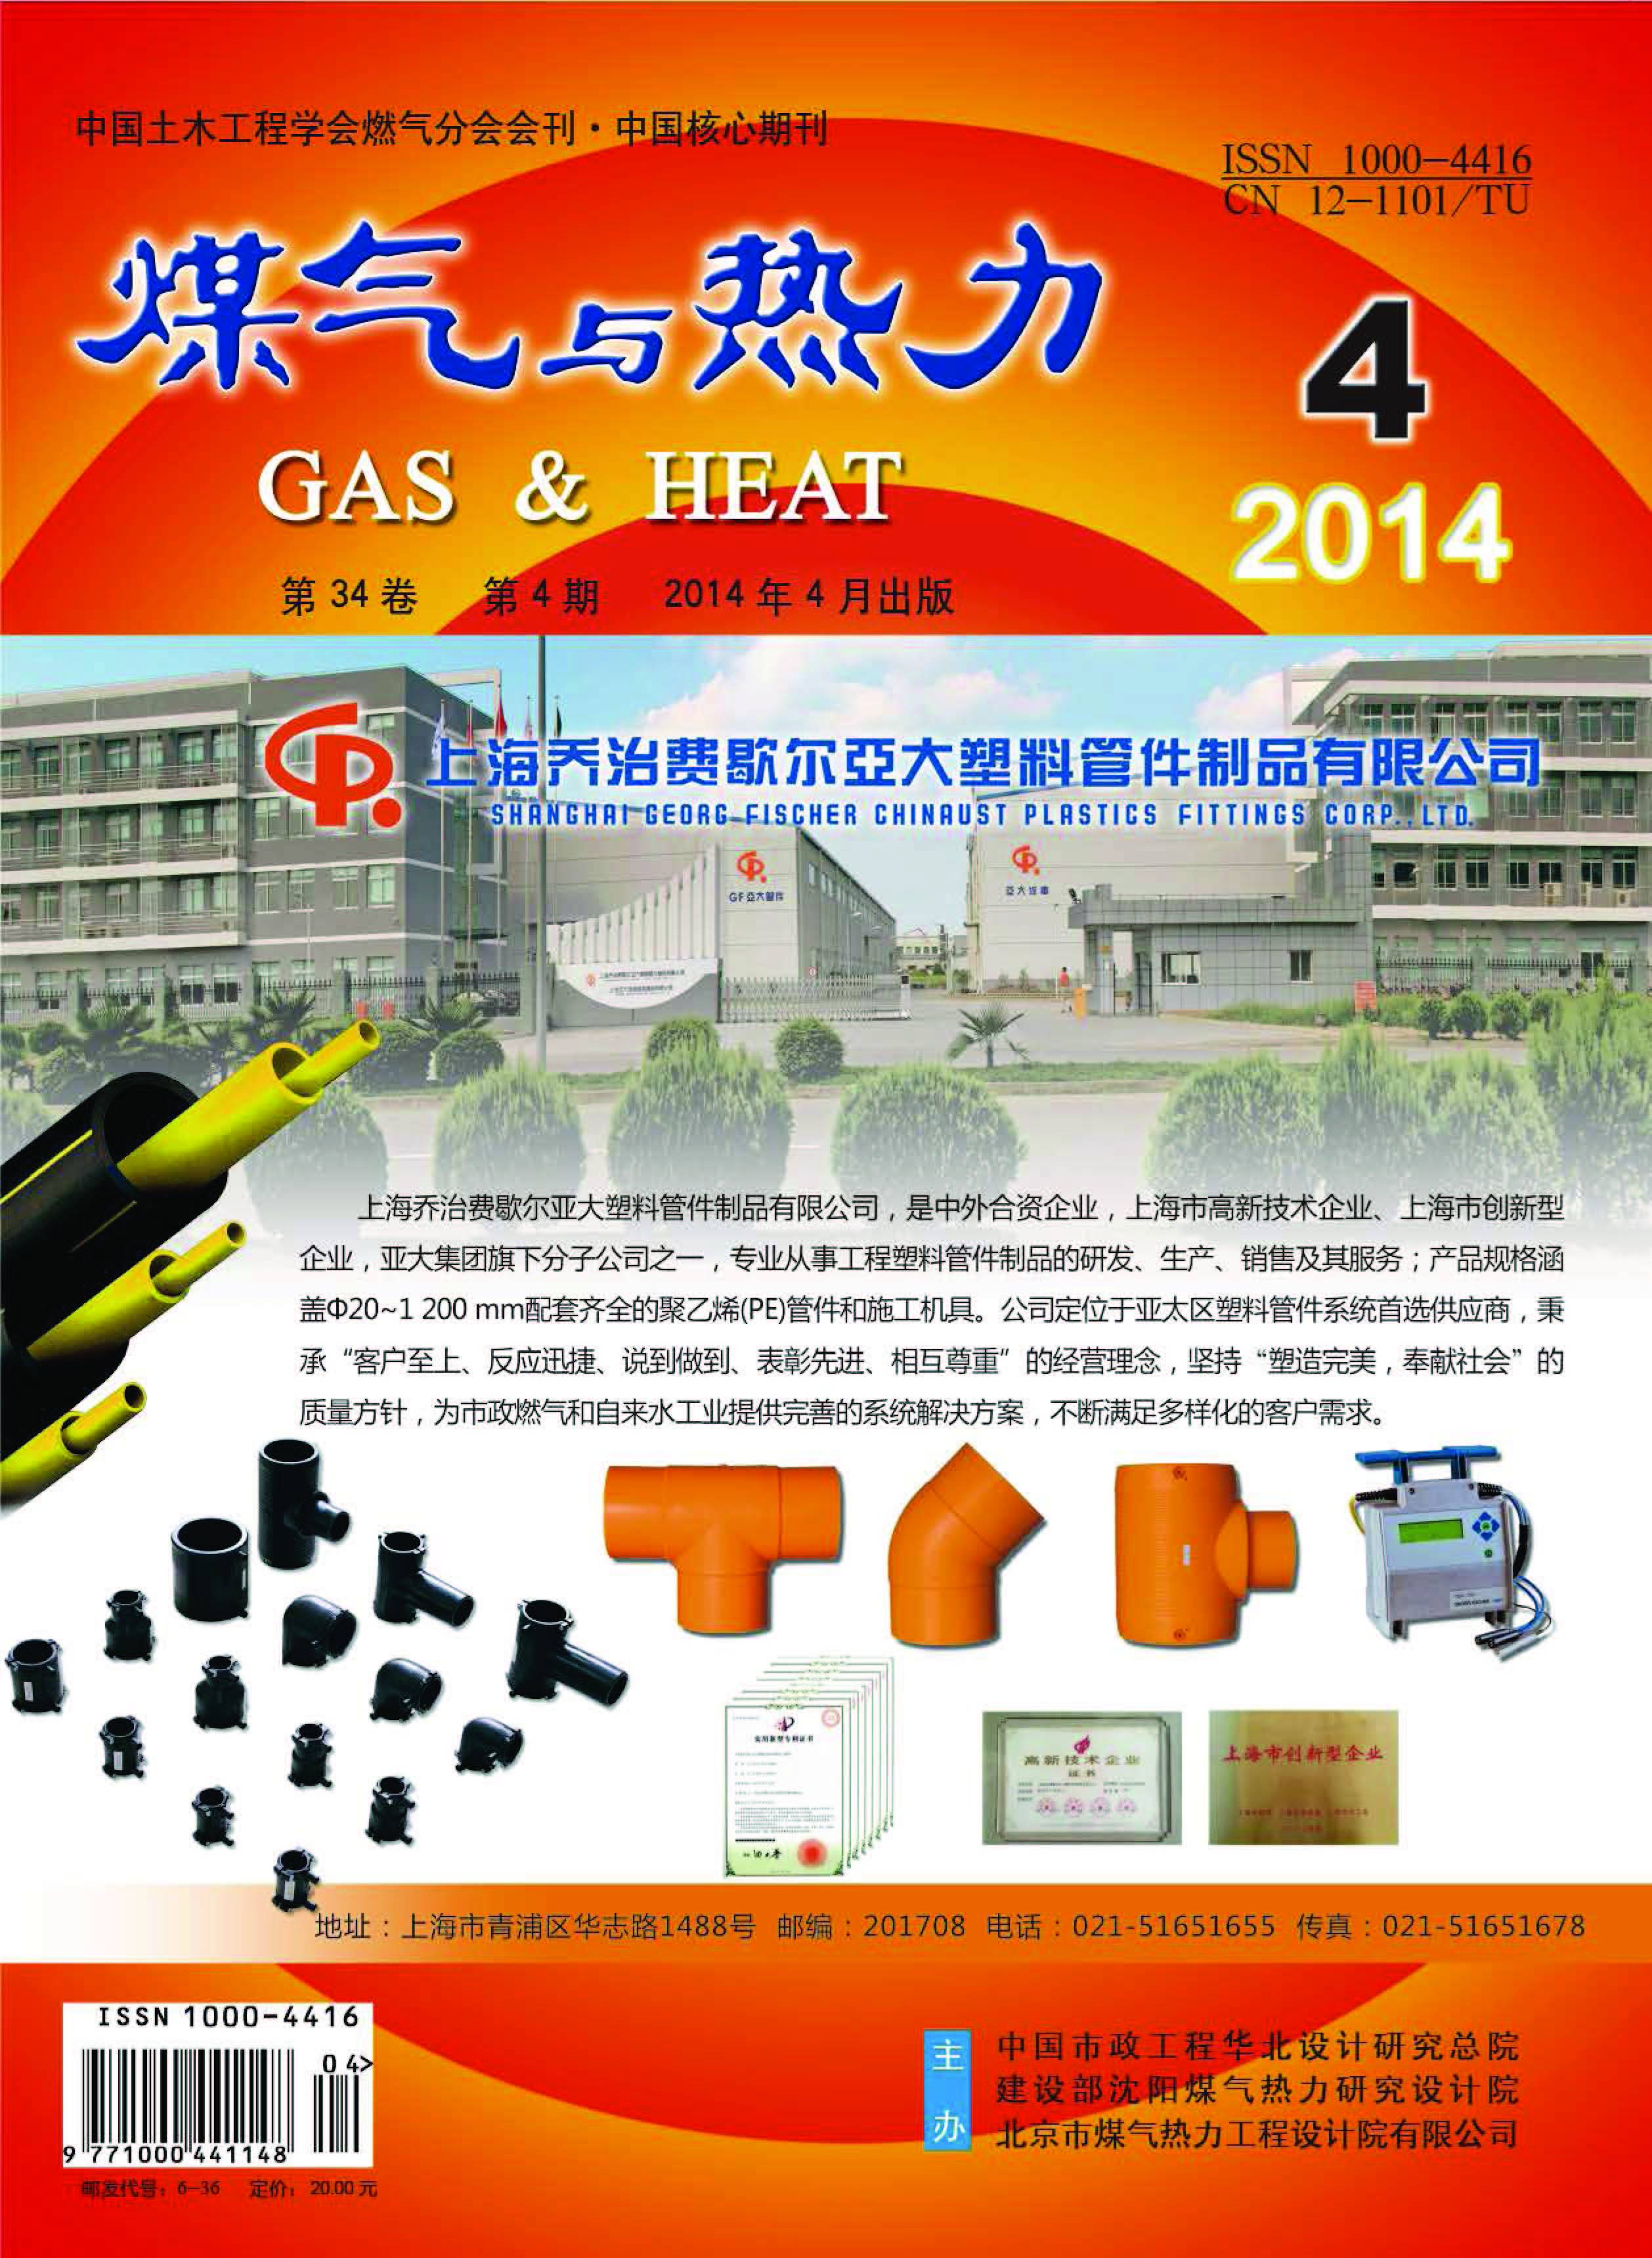 《煤气与热力》2014年4月刊